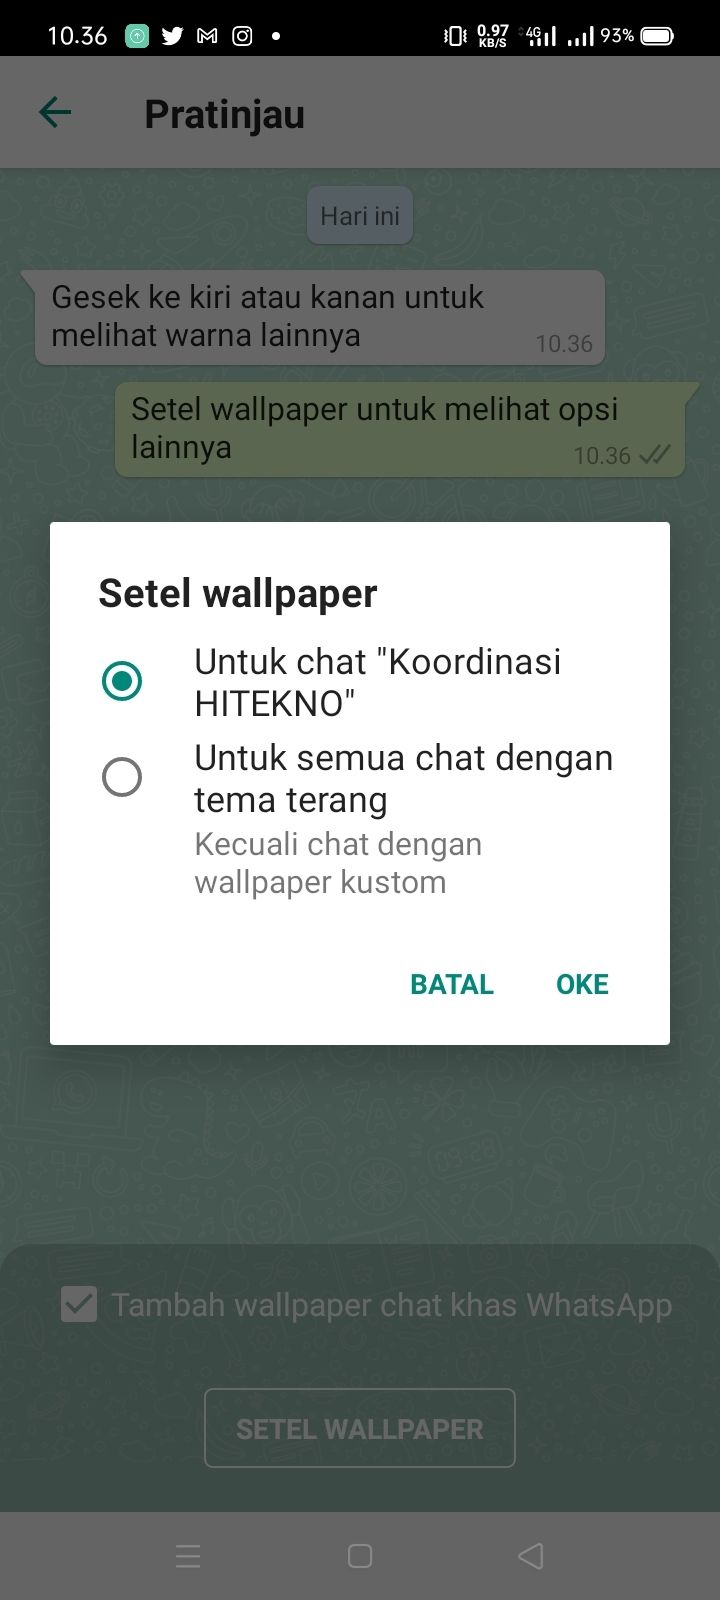 Cara mengganti wallpaper di WhatsApp. (HiTekno.com)